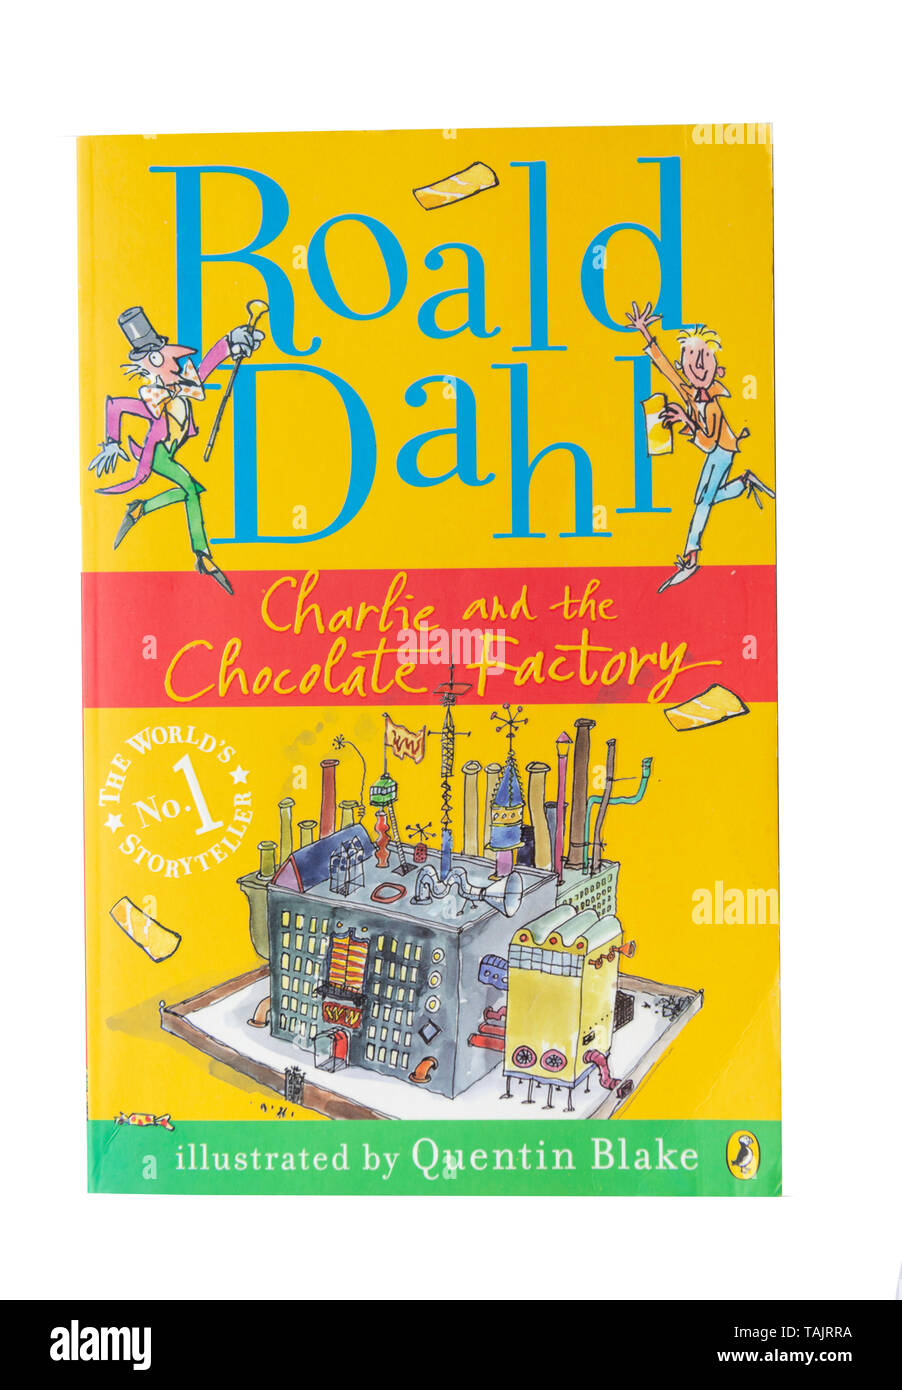 Roald Dahl's 'Charlie et la Chocolaterie' children's book, Greater London, Angleterre, Royaume-Uni Banque D'Images